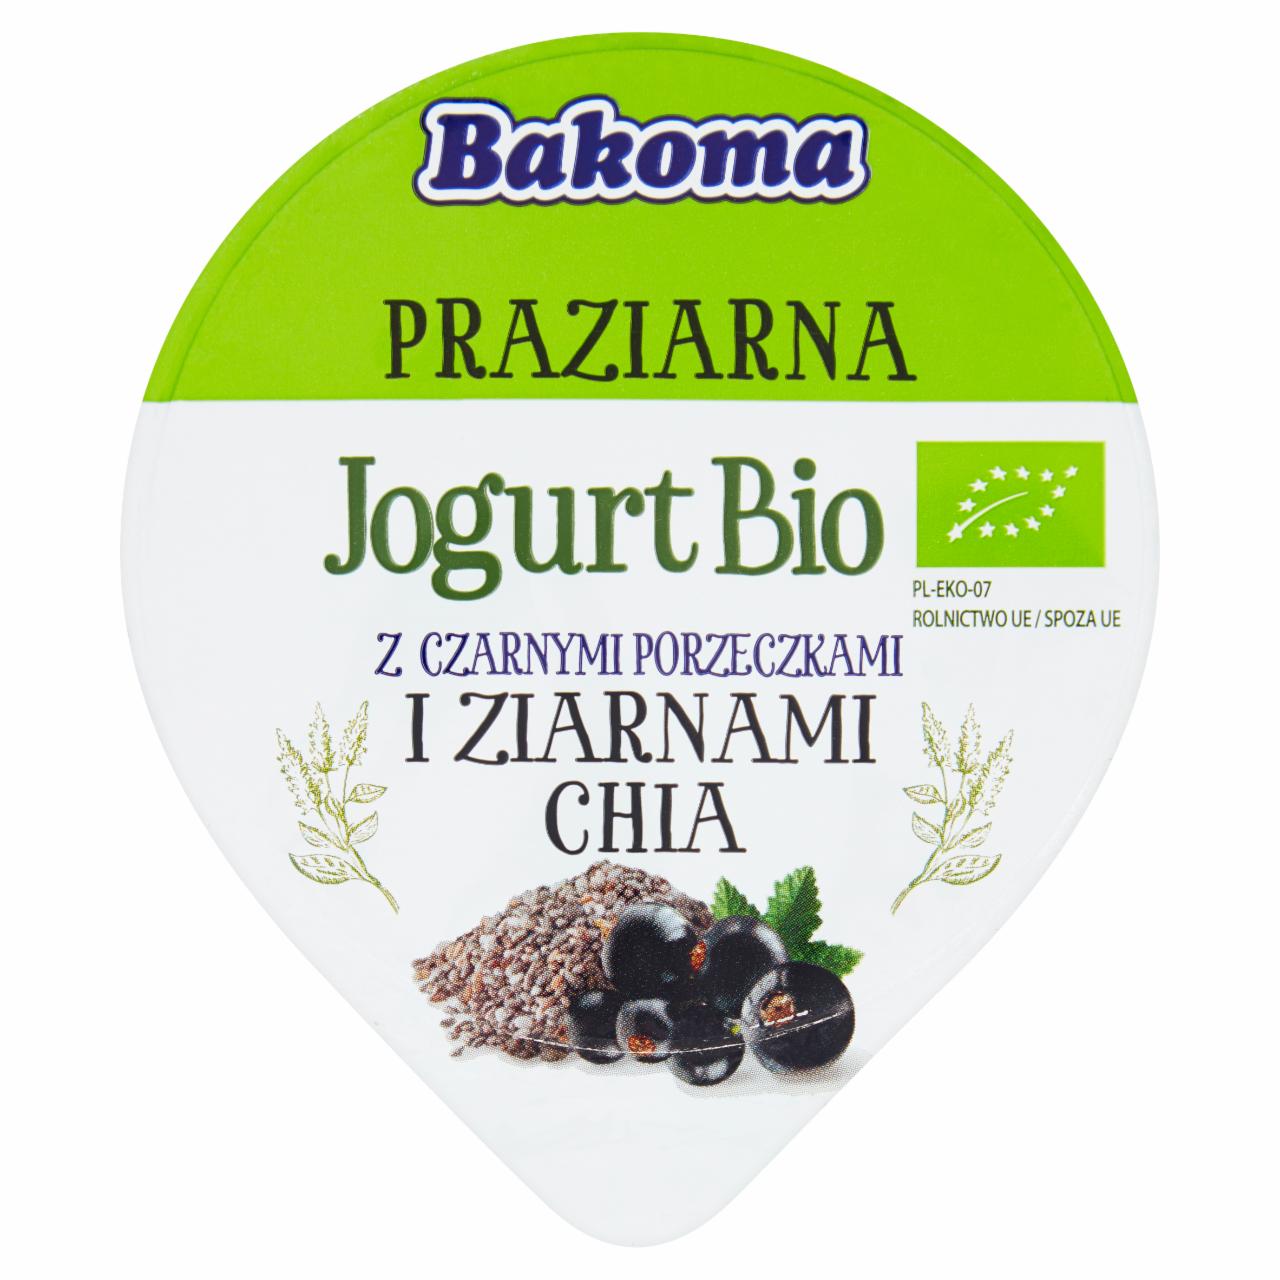 Zdjęcia - Bakoma Praziarna Jogurt Bio z czarnymi porzeczkami i ziarnami chia 140 g